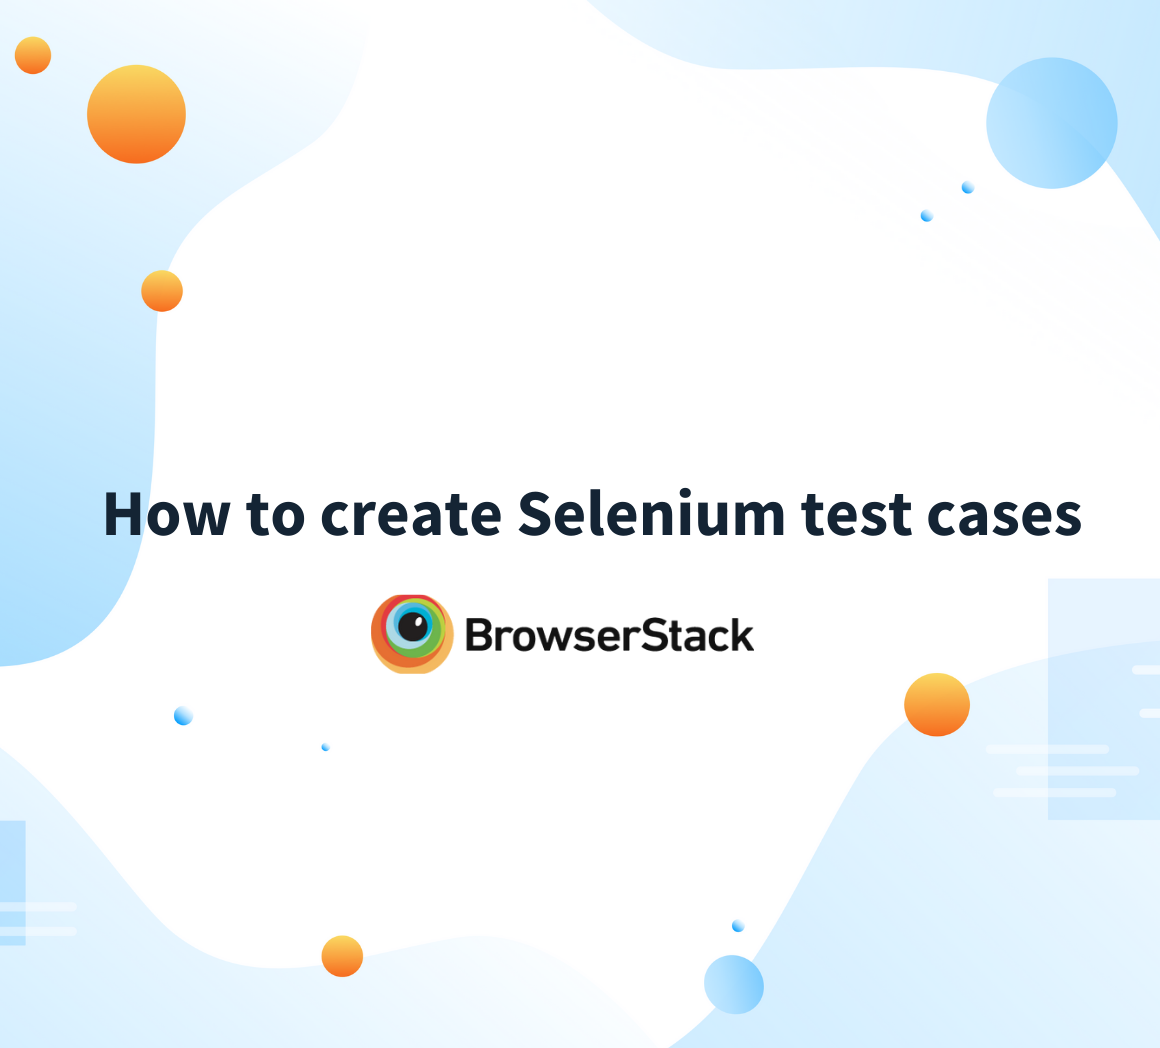 Tutorial on creating Selenium test cases